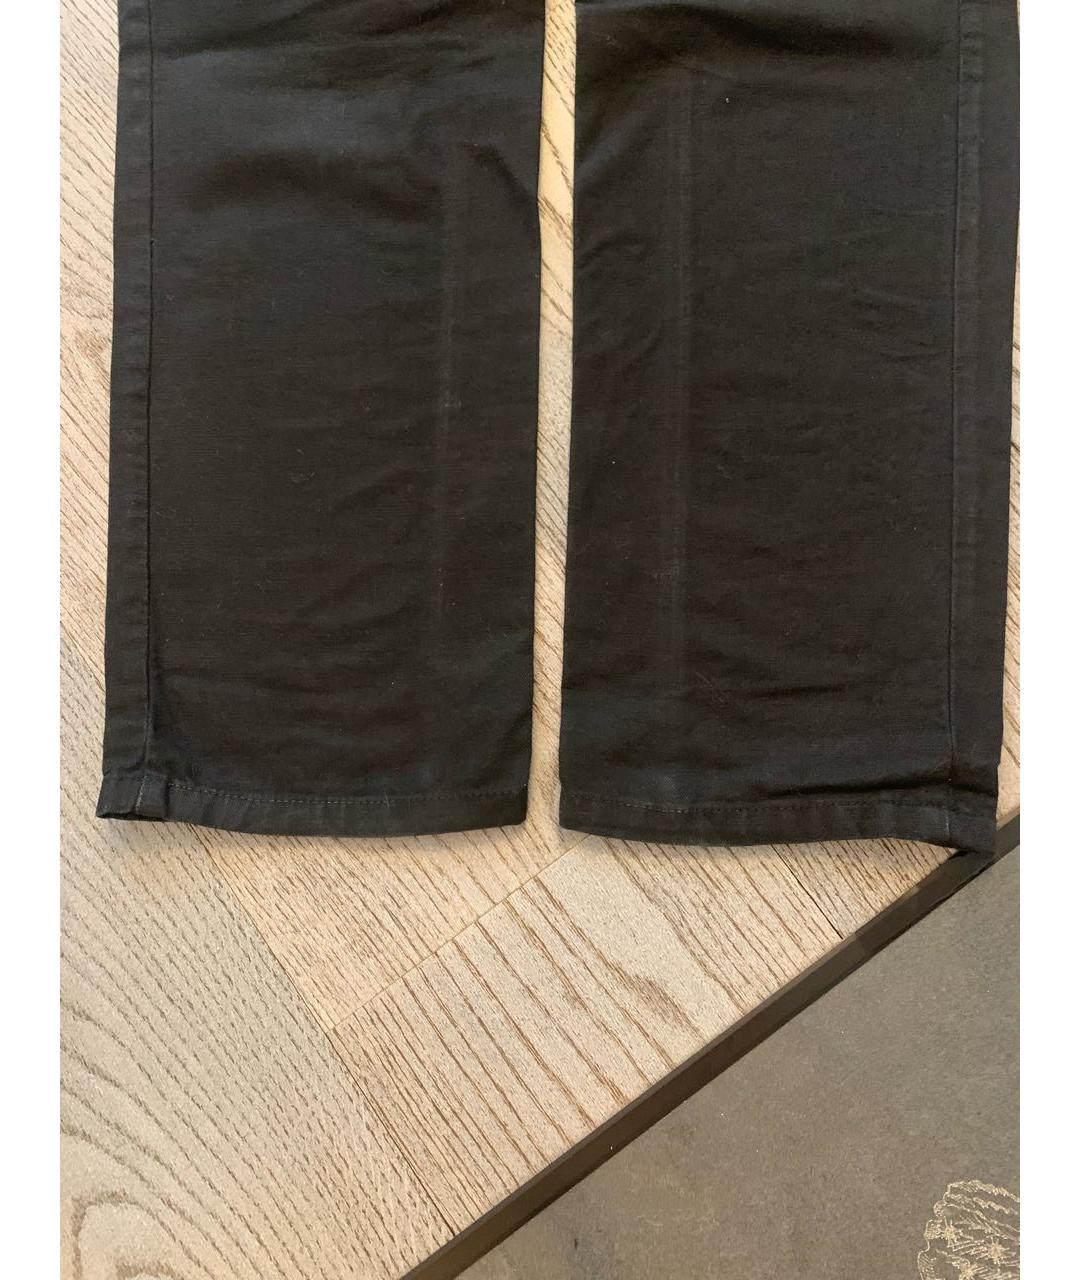 DOLCE&GABBANA Черные хлопковые прямые джинсы, фото 5